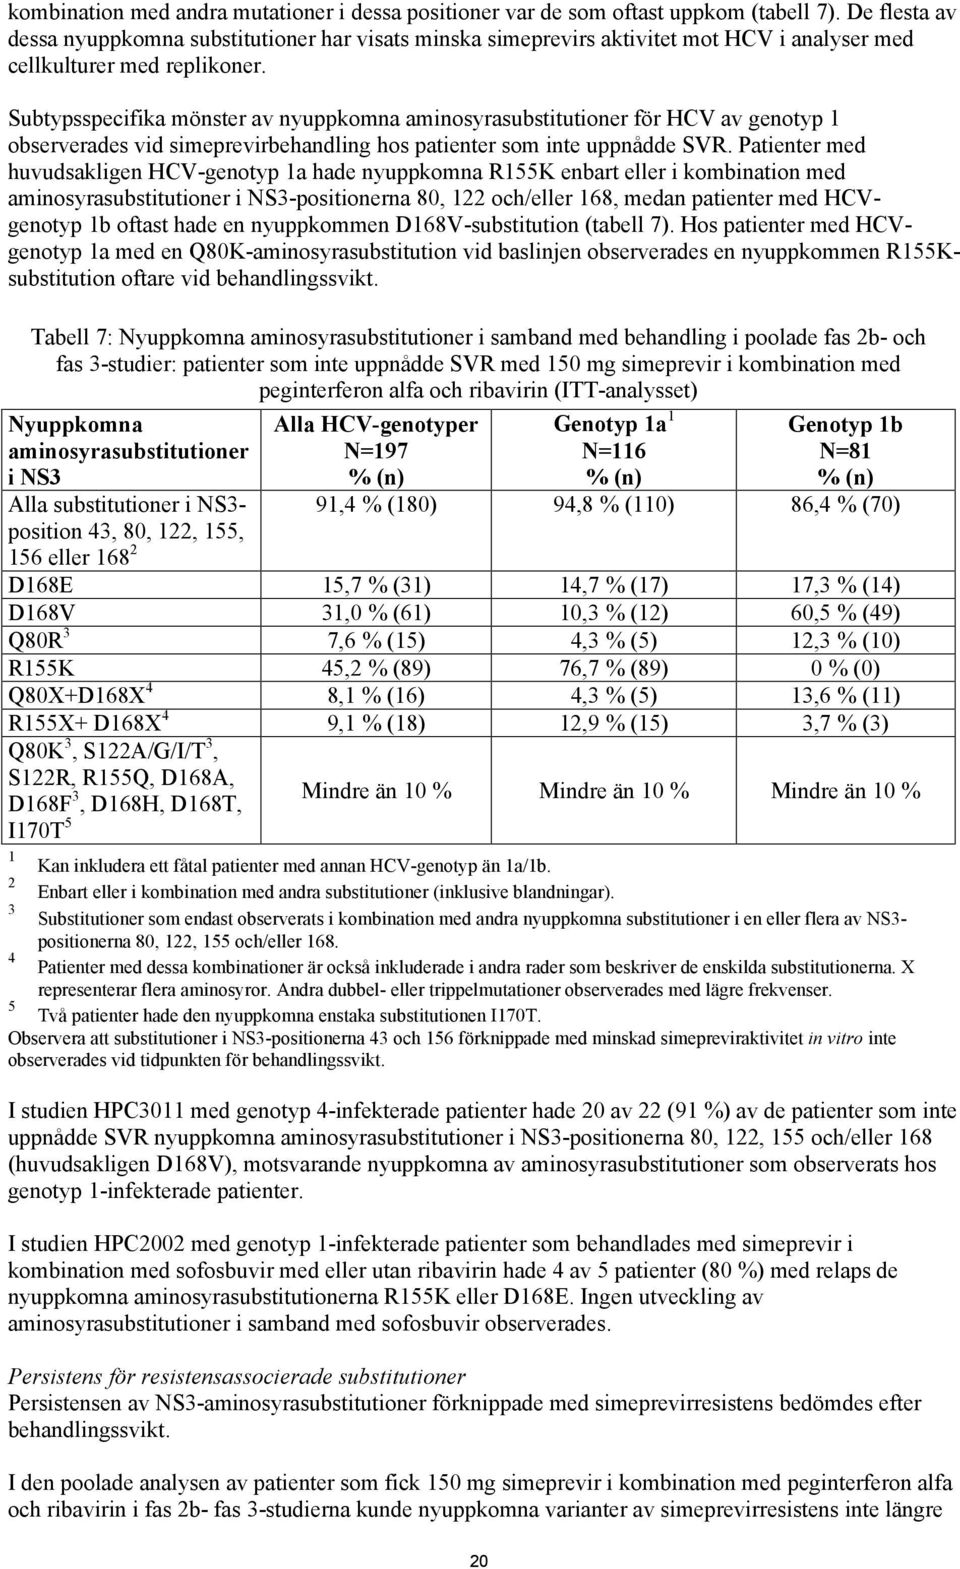 Subtypsspecifika mönster av nyuppkomna aminosyrasubstitutioner för HCV av genotyp 1 observerades vid simeprevirbehandling hos patienter som inte uppnådde SVR.